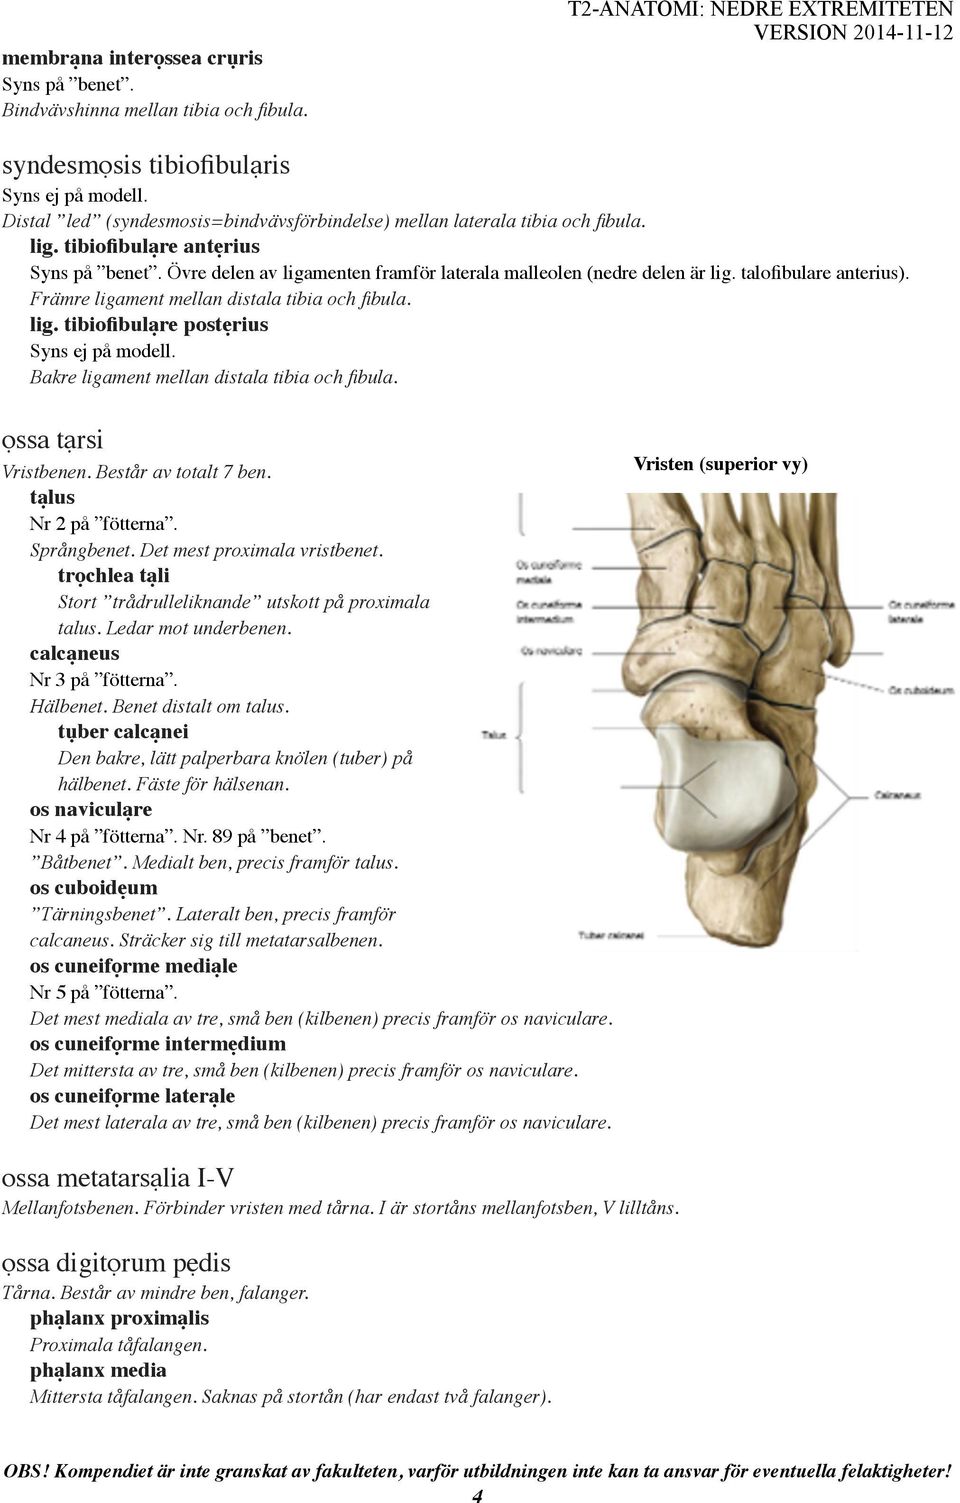 Övre delen av ligamenten framför laterala malleolen (nedre delen är lig. talofibulare anterius). Främre ligament mellan distala tibia och fibula. lig. tibiofibulạre postẹrius Bakre ligament mellan distala tibia och fibula.